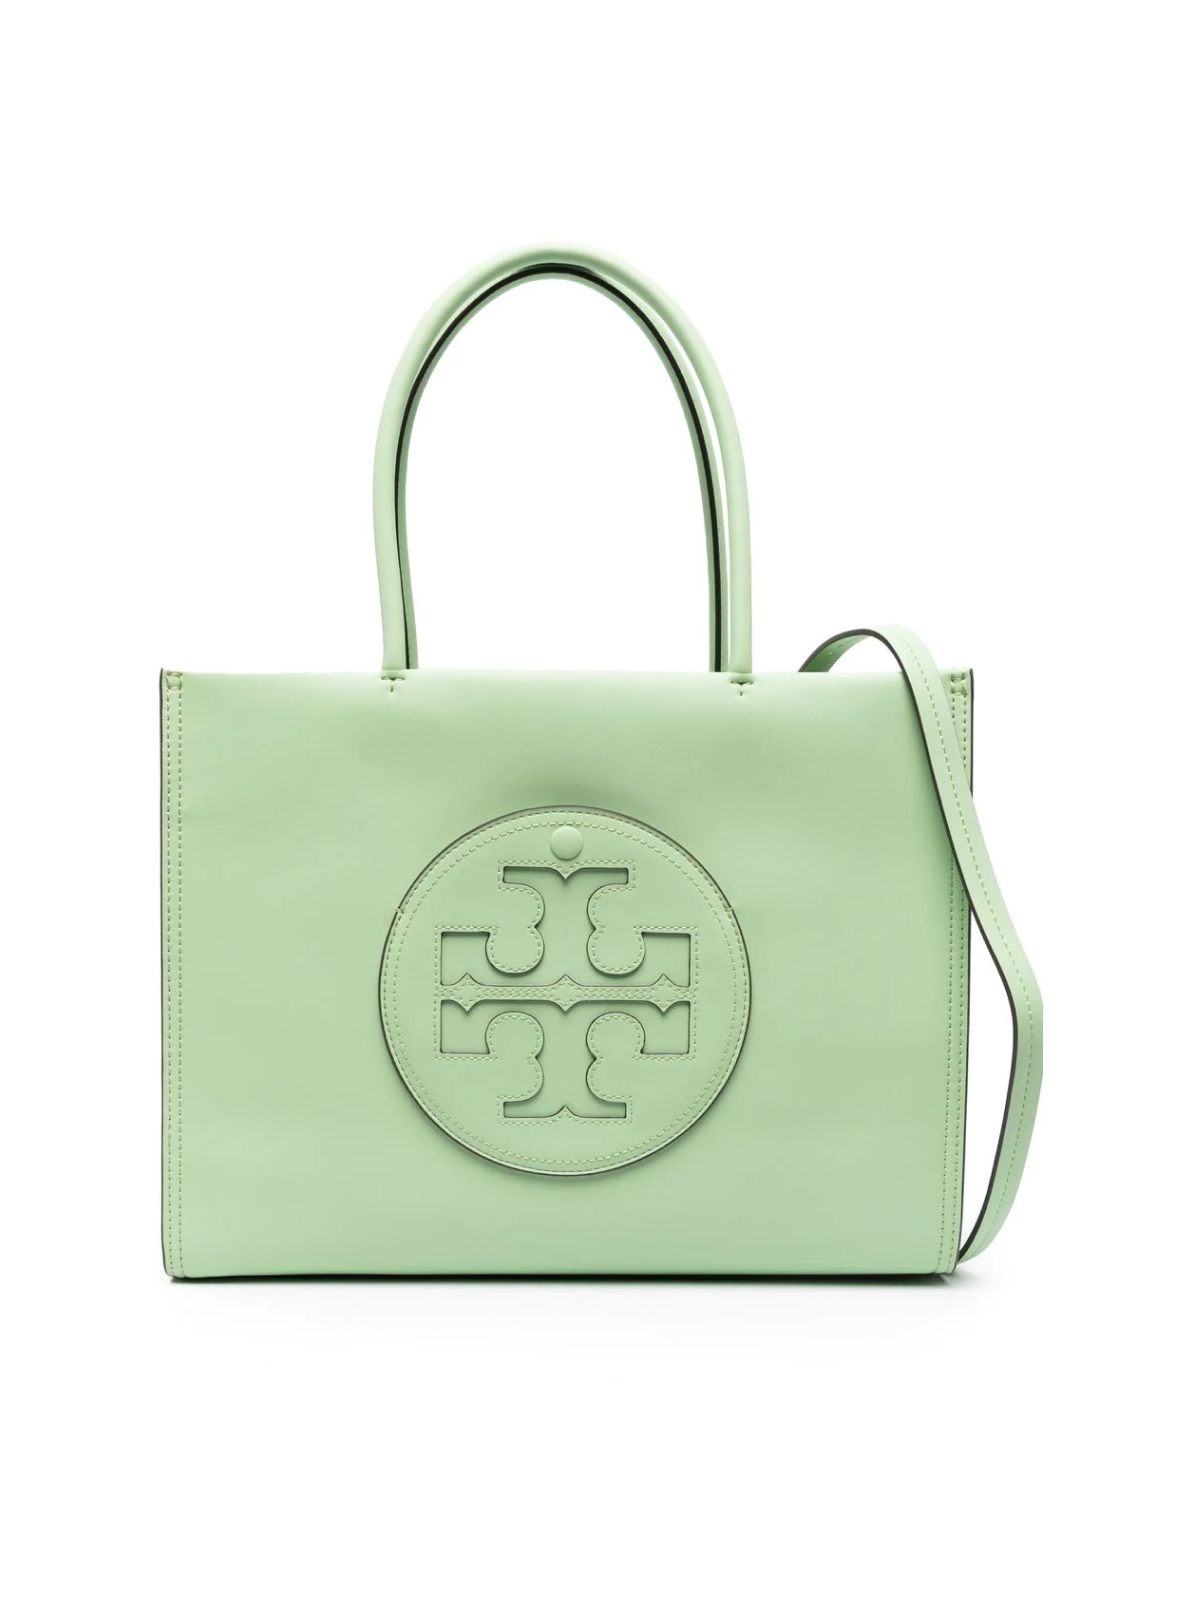 Eco Ella Logo Tote Bag